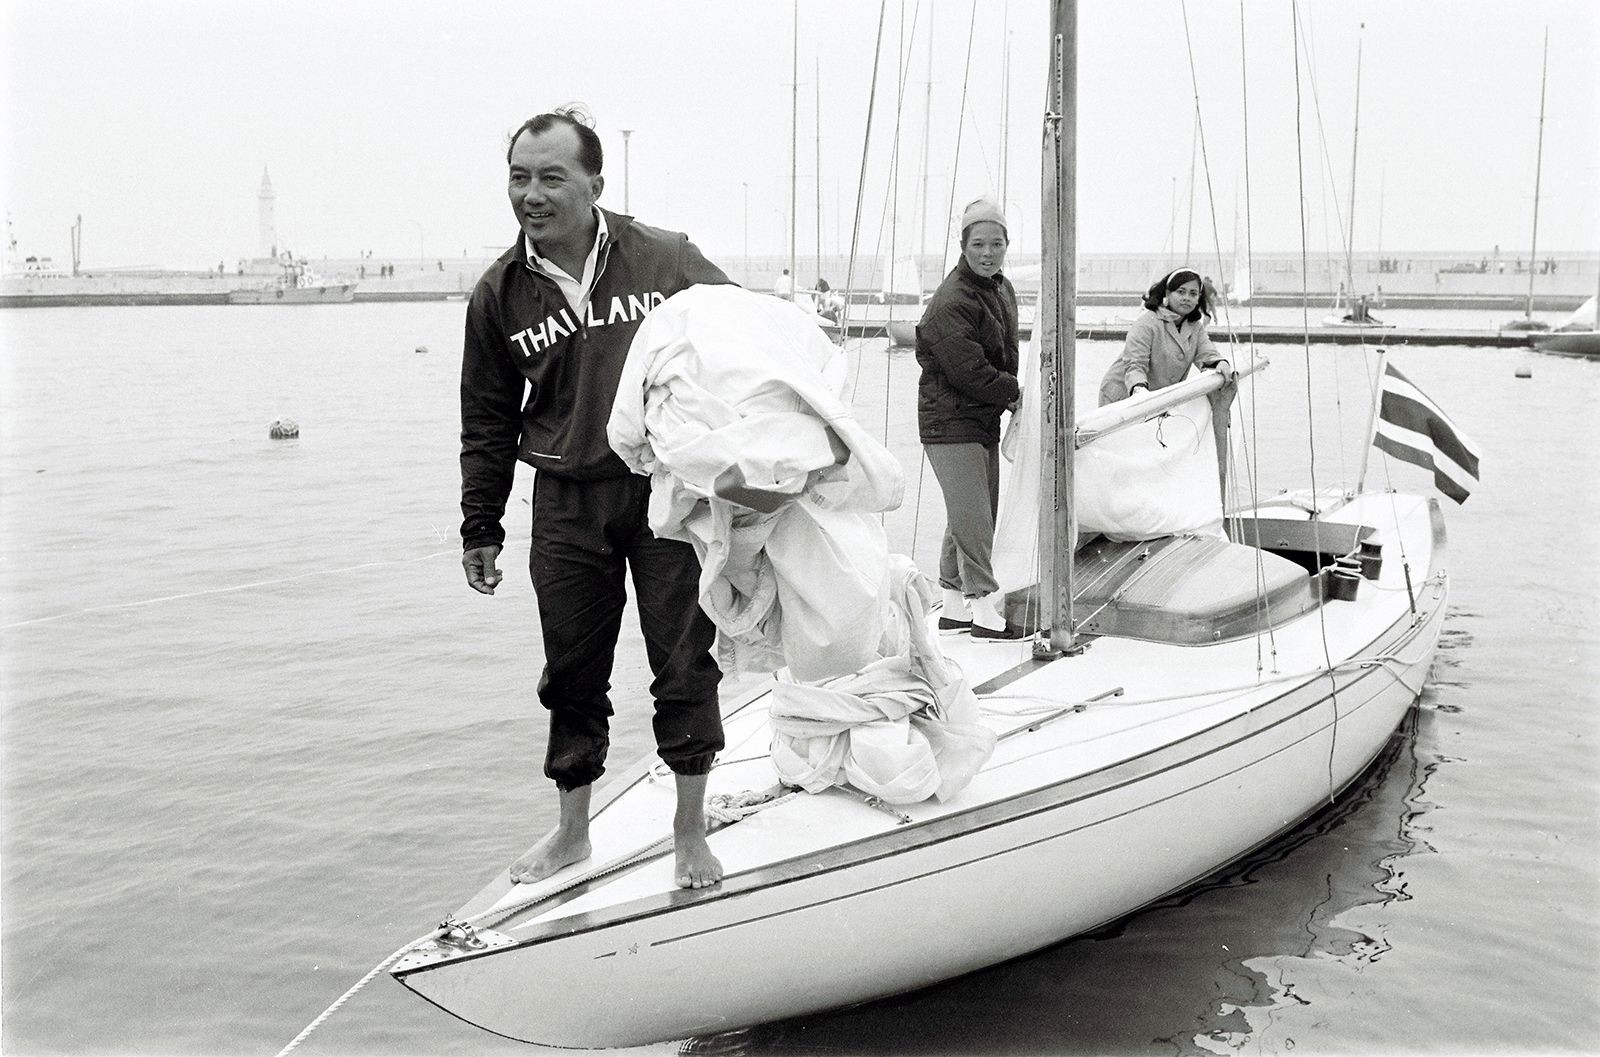 Hoàng tử Thái Lan, Birabongse Bhanudej (phía bên trái), thi đấu tại một trong những cuộc đua thuyền cùng với Công chúa Arunee và Prateep Areerob. (Nguồn: Getty Images)